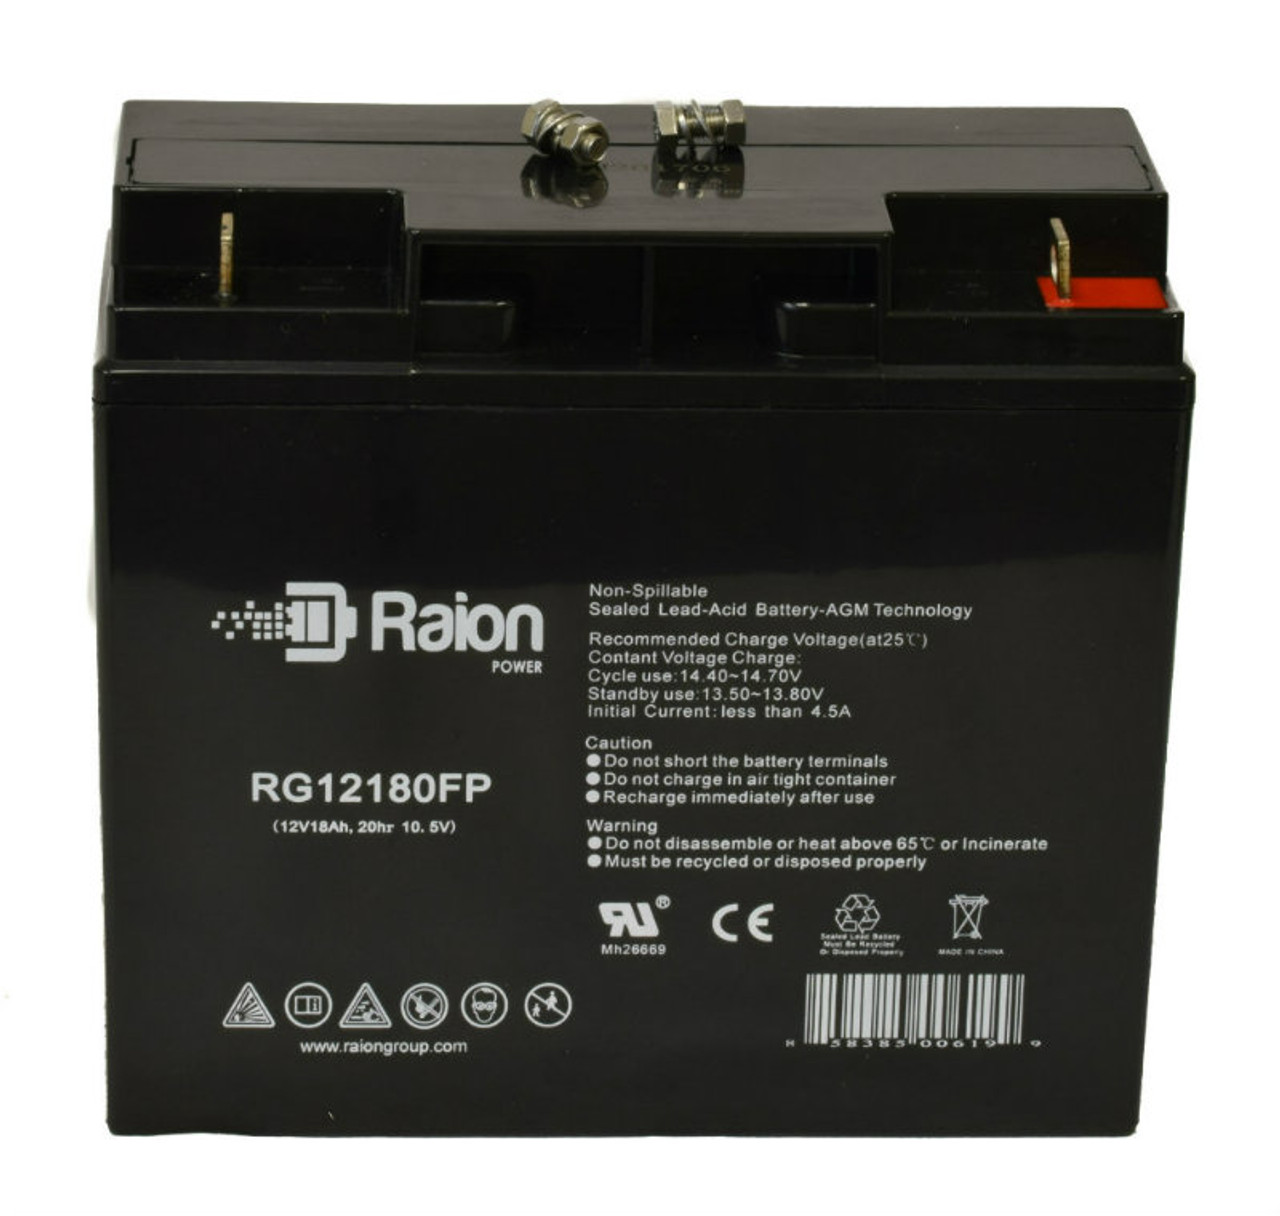 Raion Power RG12180FP 12V 18Ah Lead Acid Battery for Power Cell PC12180